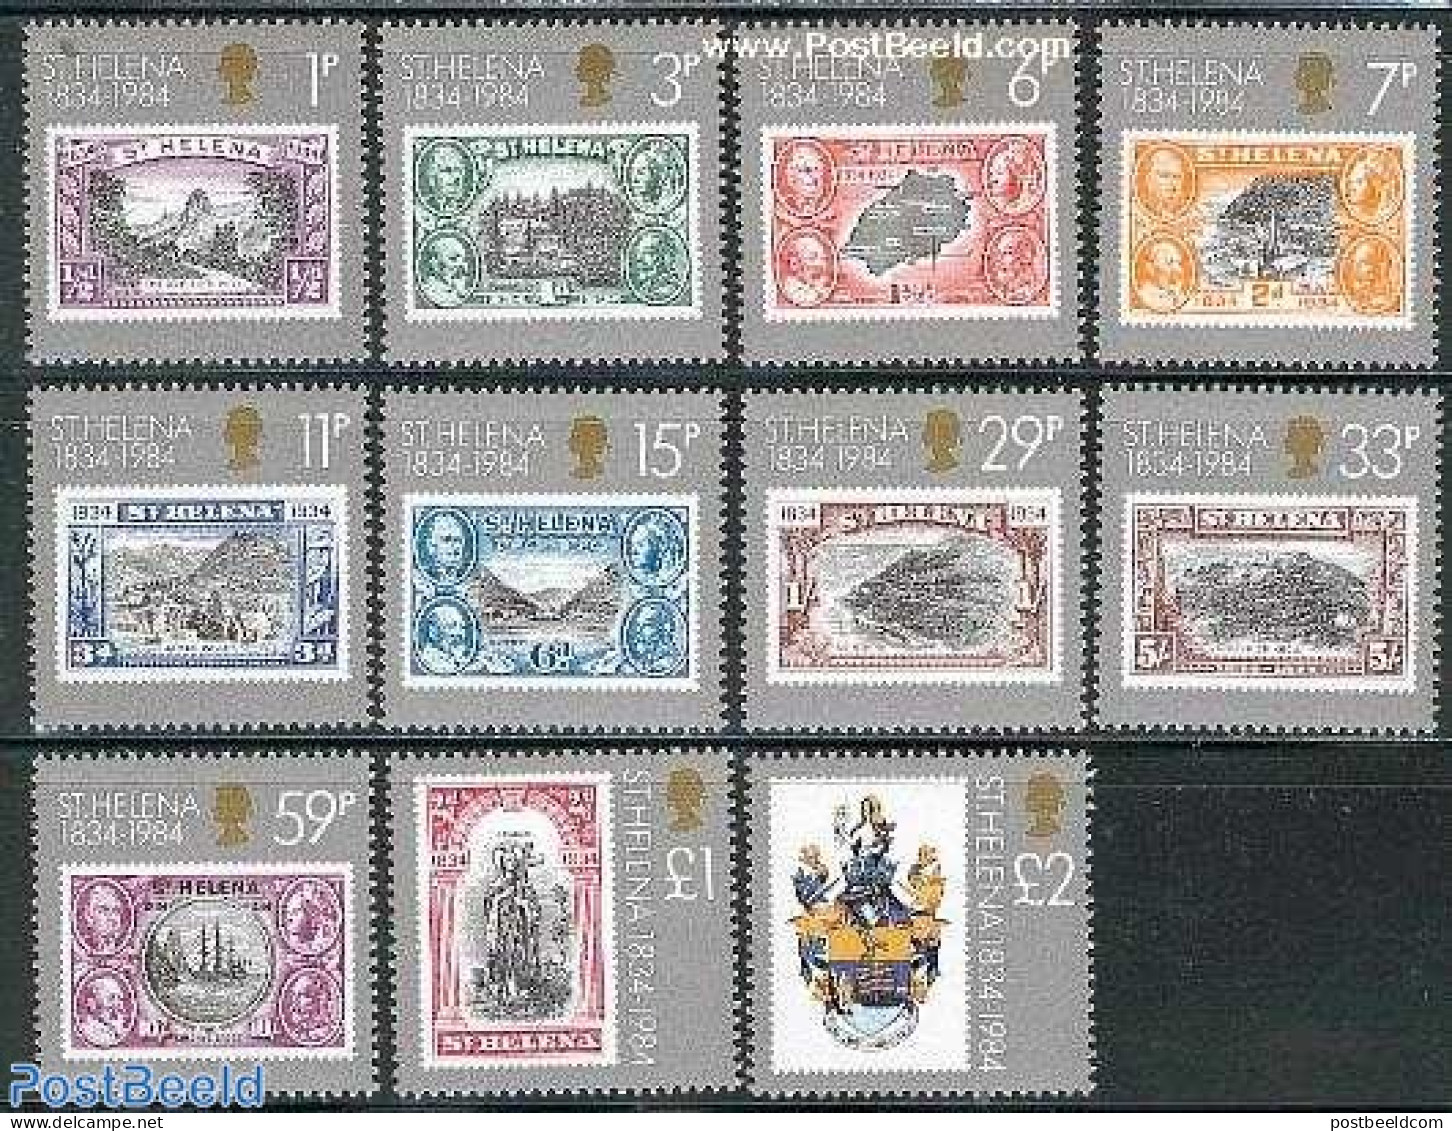 Saint Helena 1984 Colony 150th Anniversary 11v, Mint NH, Stamps On Stamps - Stamps On Stamps